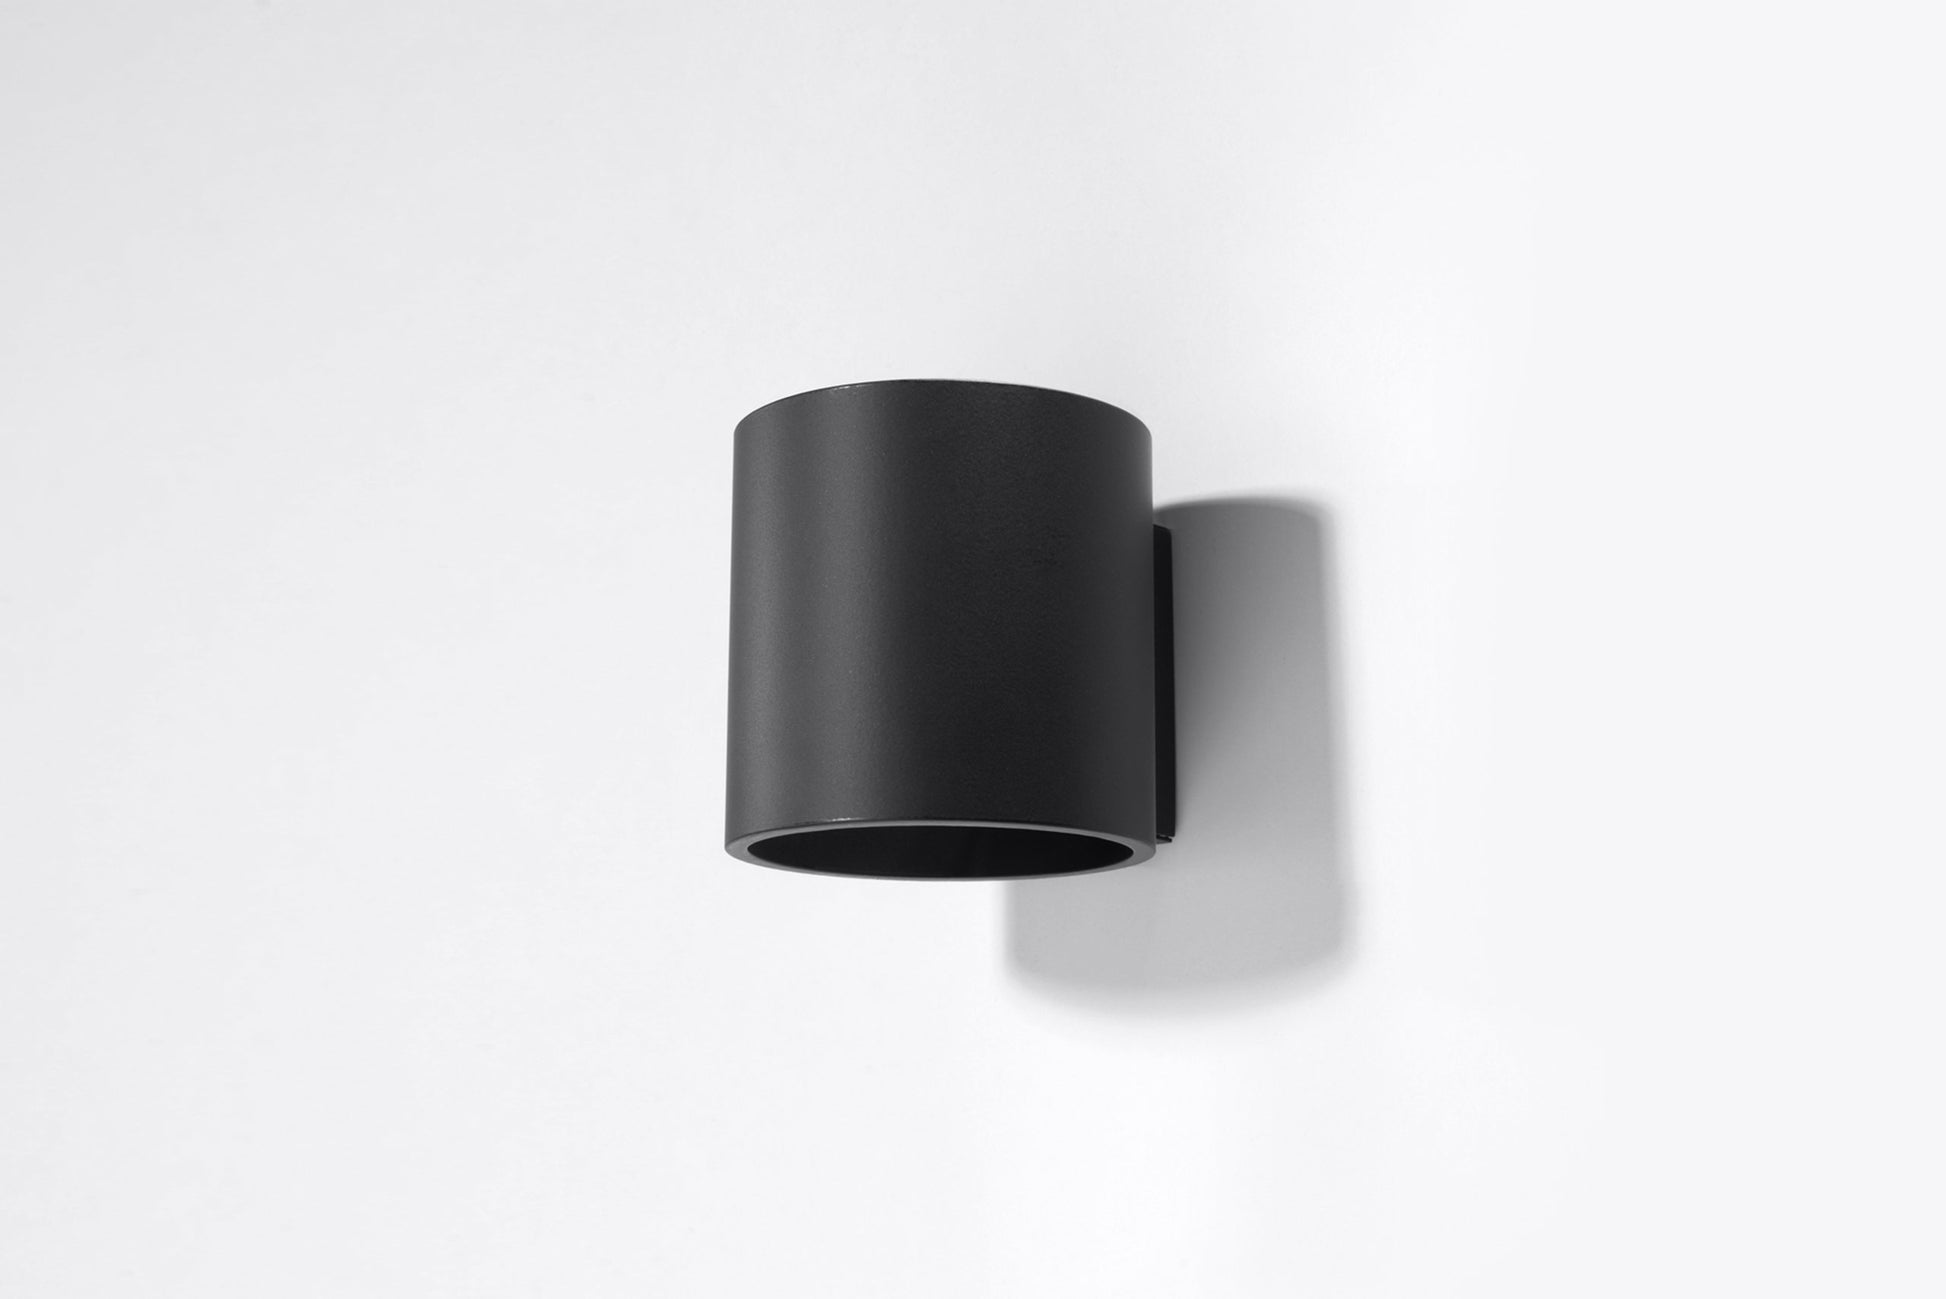 Wall lamp ORBIS 1 black